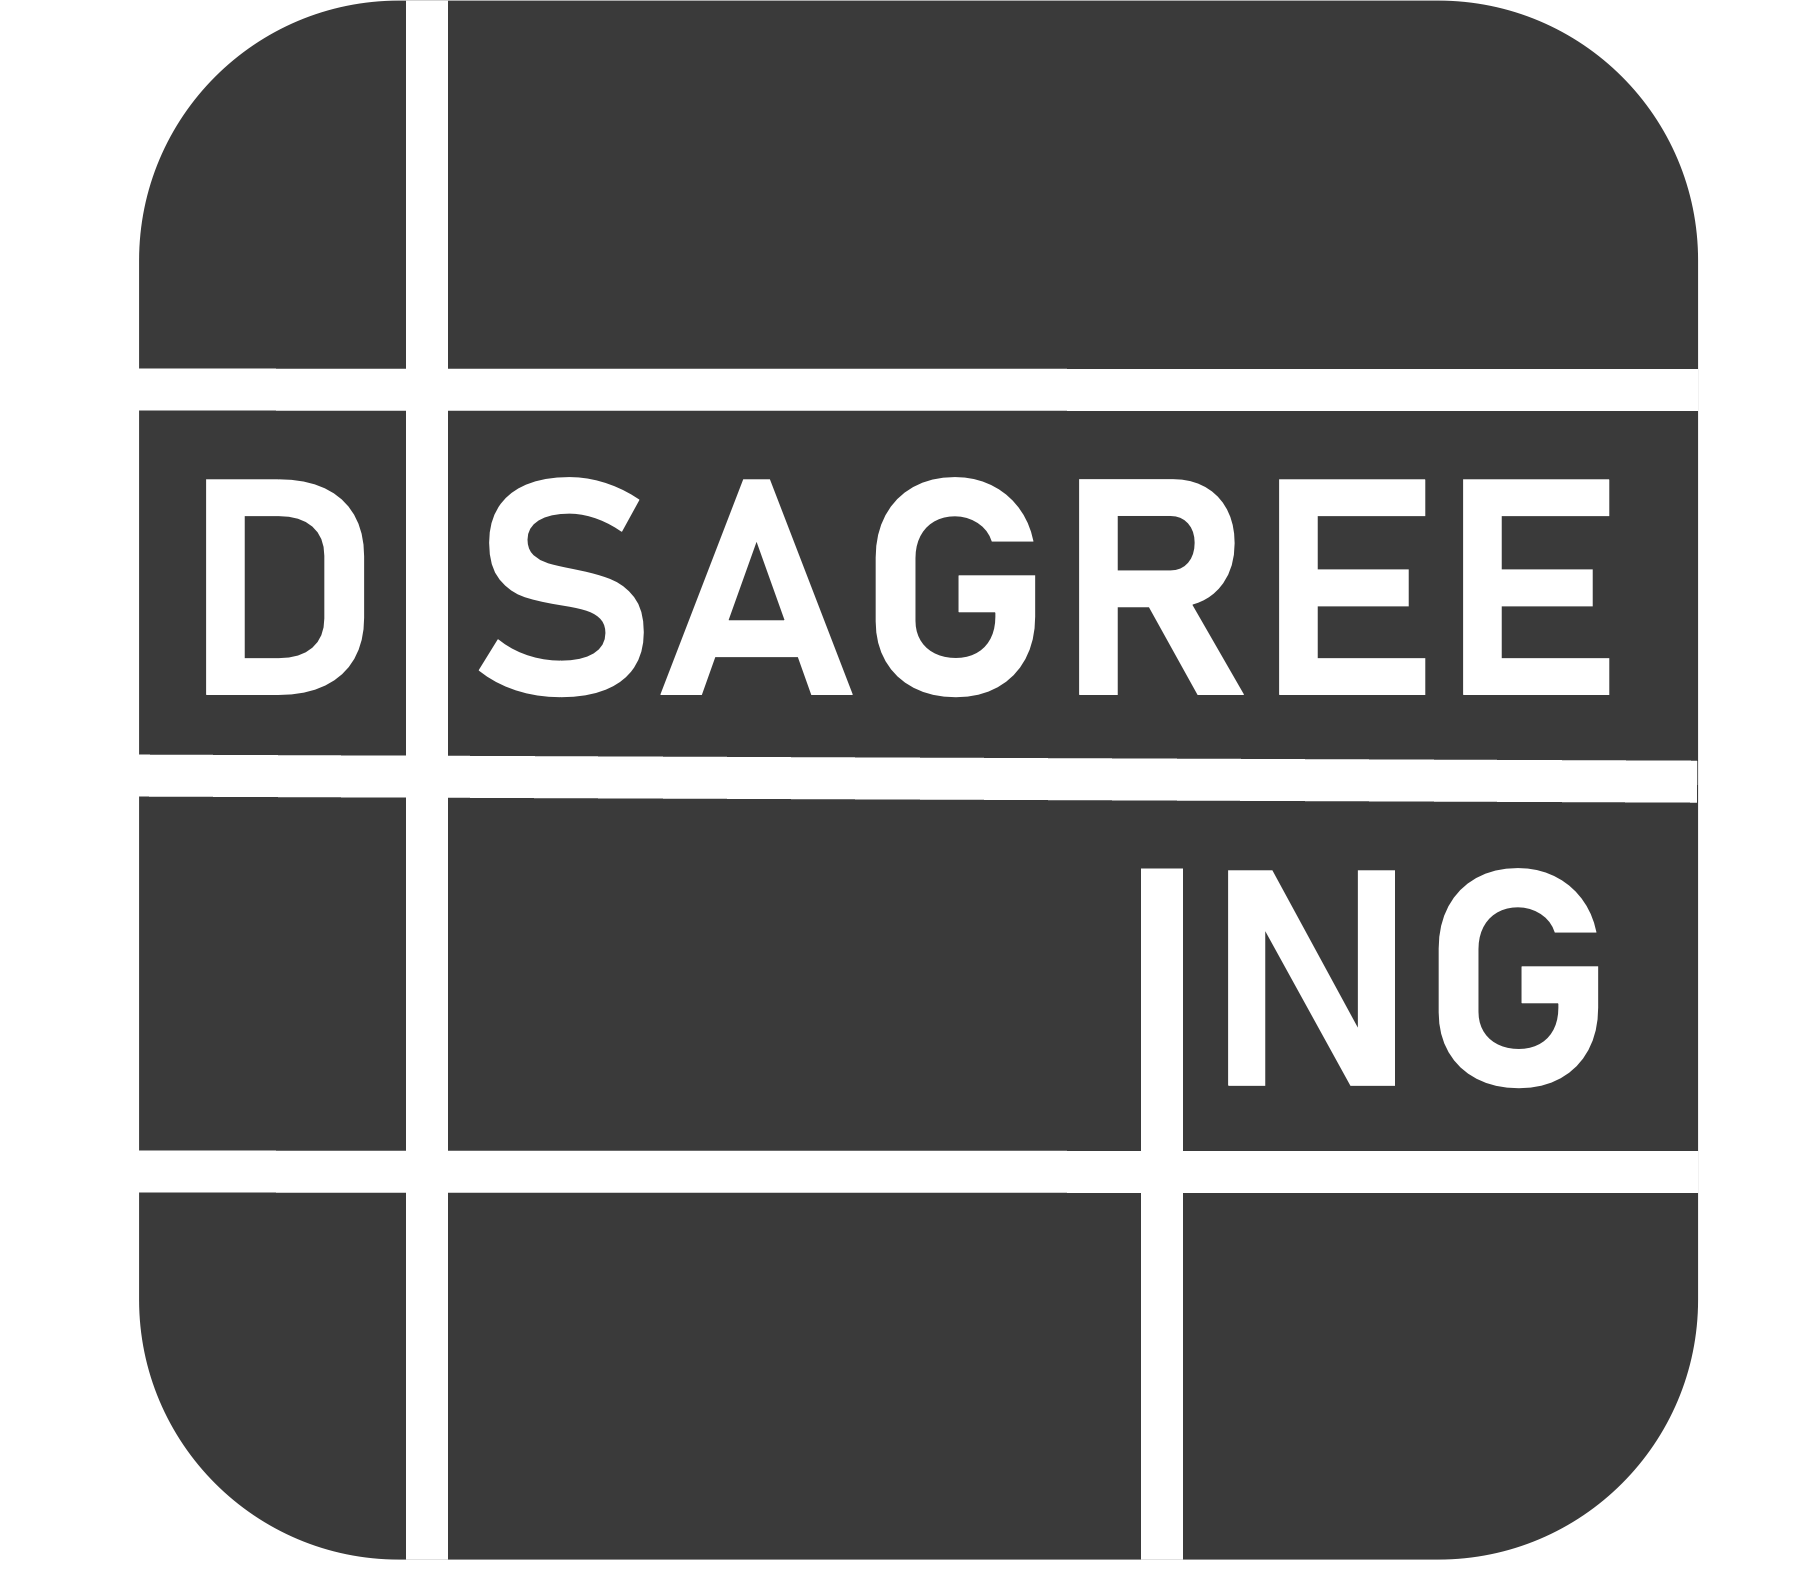 Disagree.ing Logo